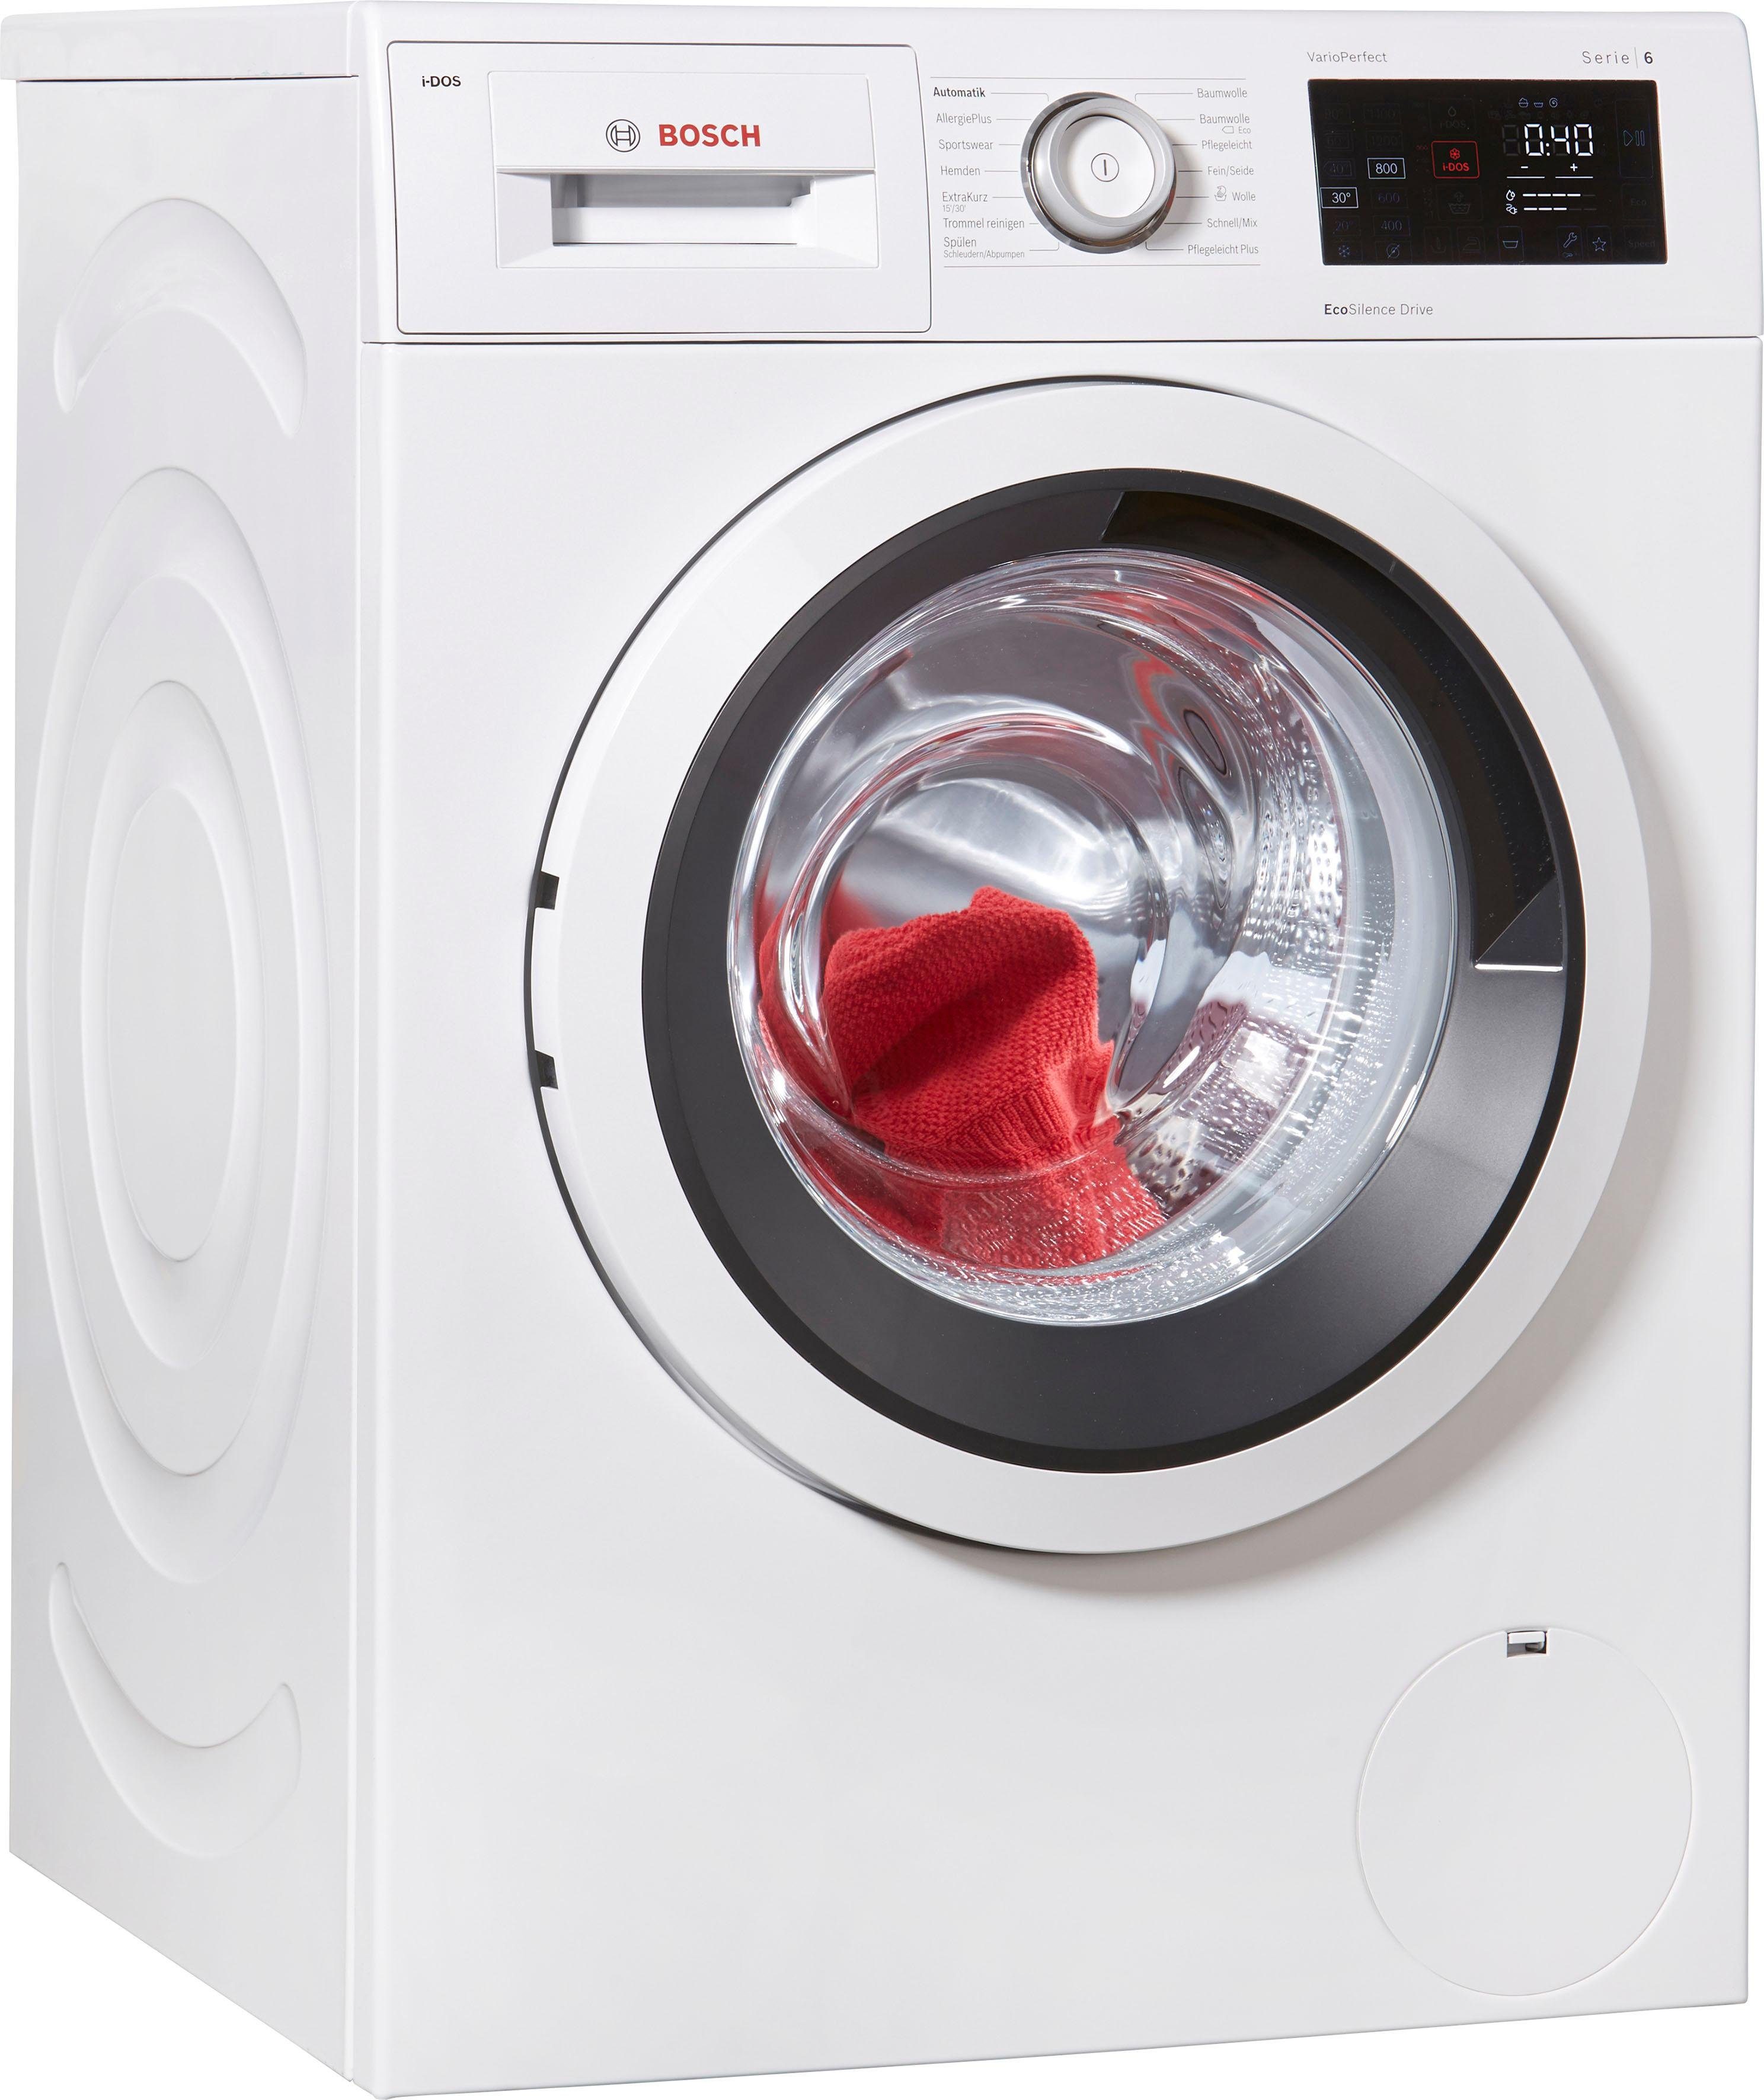 BOSCH Waschmaschine Serie 6 WAT286V0, 8 kg, 1400 U/min, i-Dos  Dosierautomatik online kaufen | OTTO